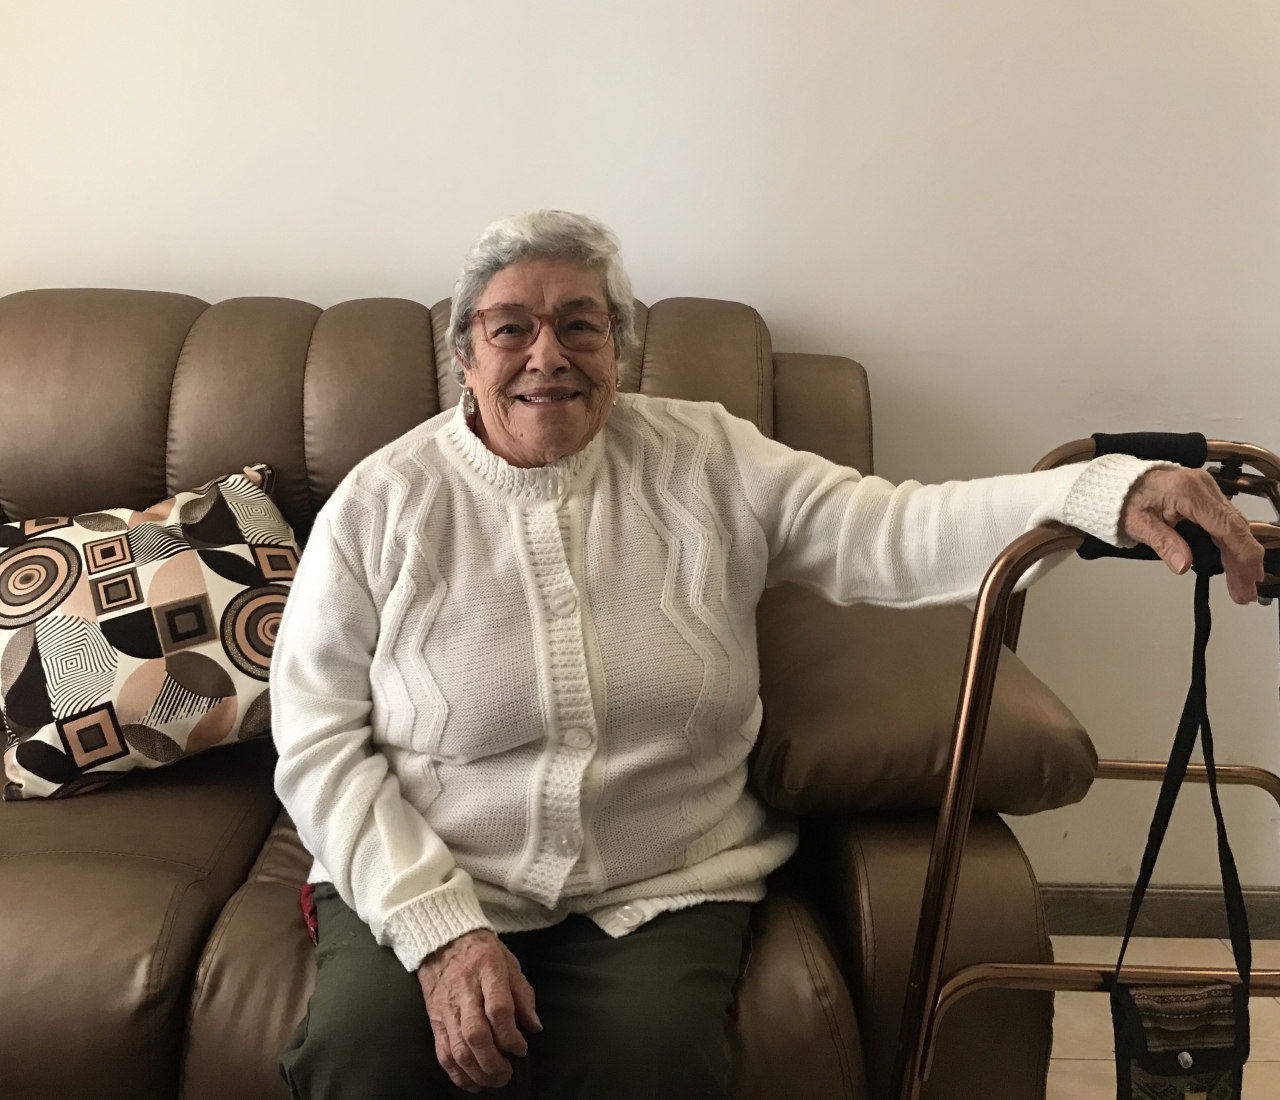 “Ser viejo no es sinónimo de muerte”, afirma Aura Inés Rodríguez, que a sus 85 años vive por primera vez una pandemia